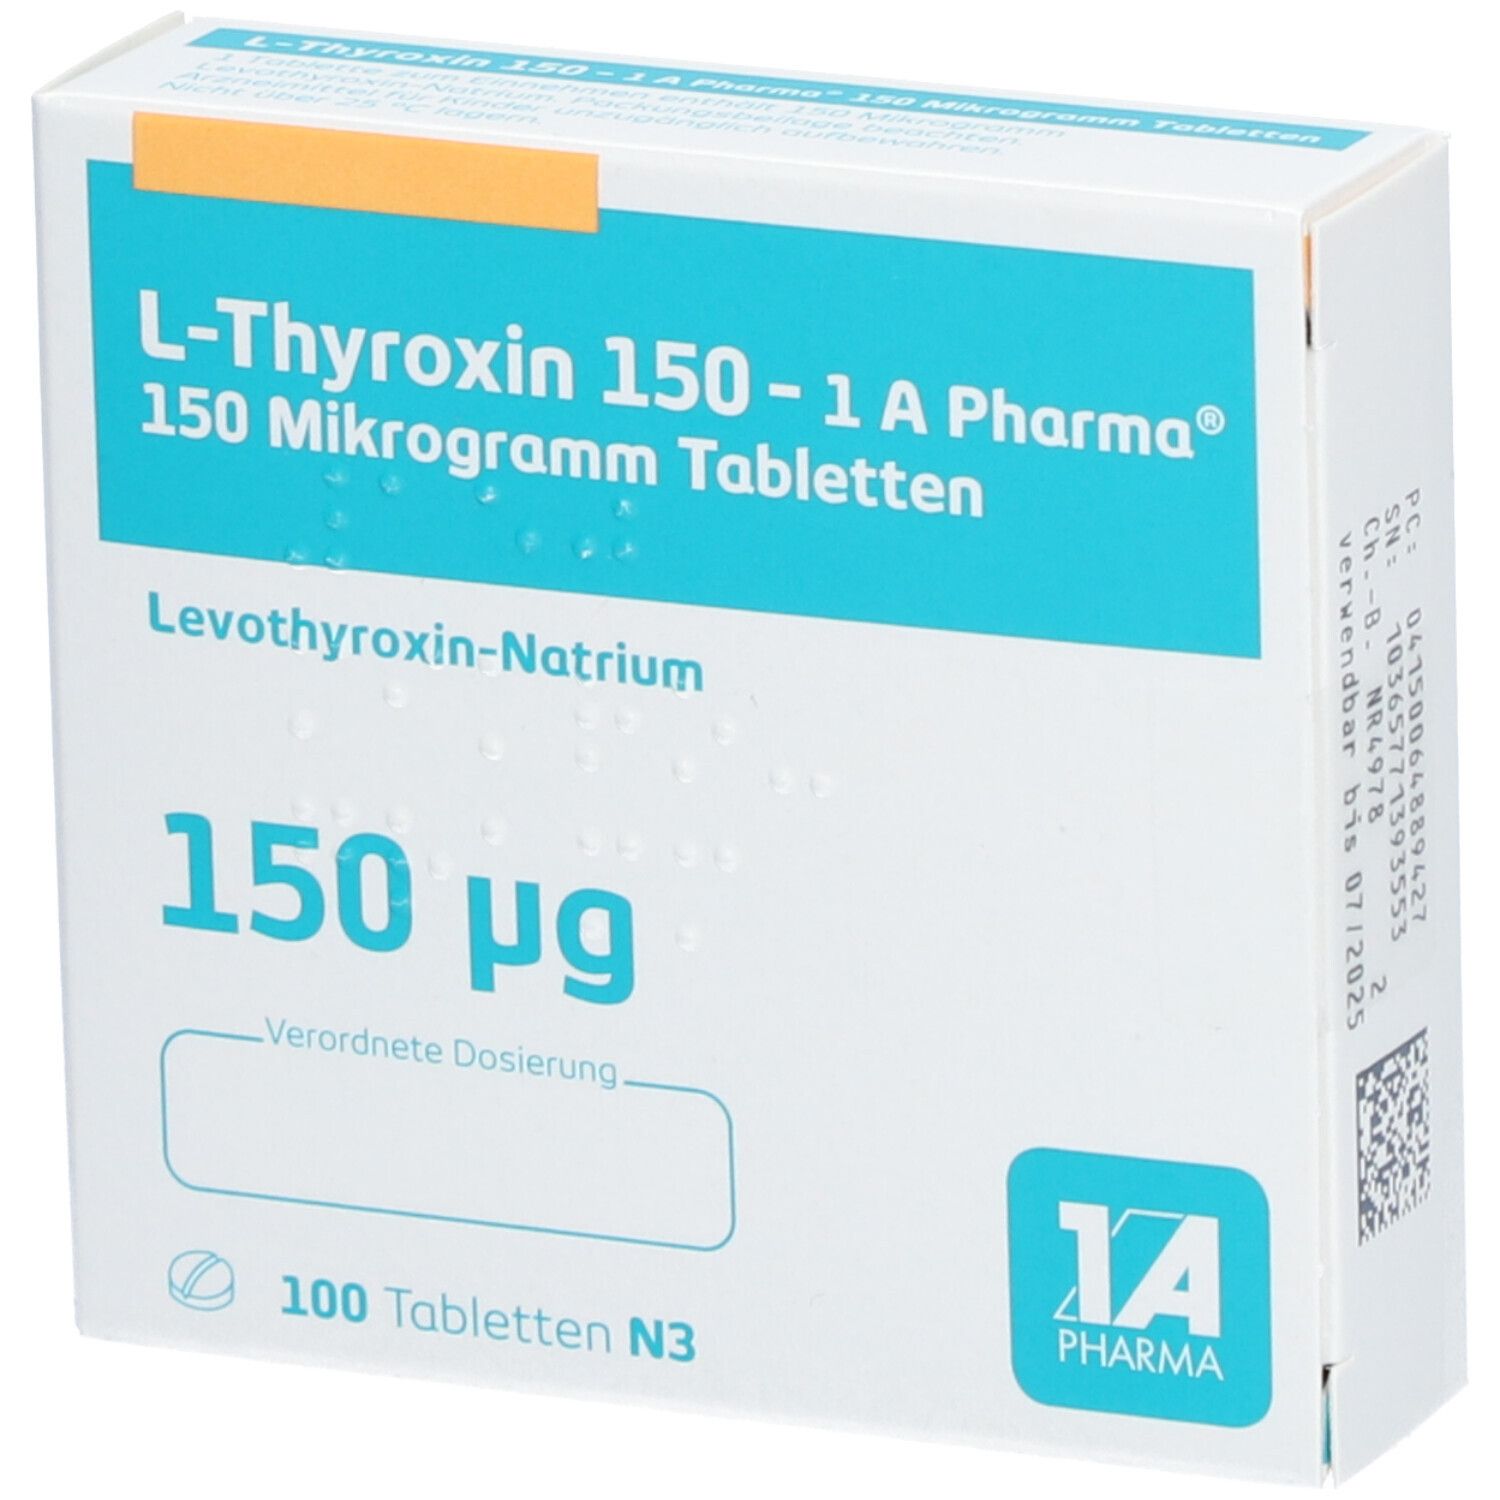 L Thyroxin 150 1A Pharma®